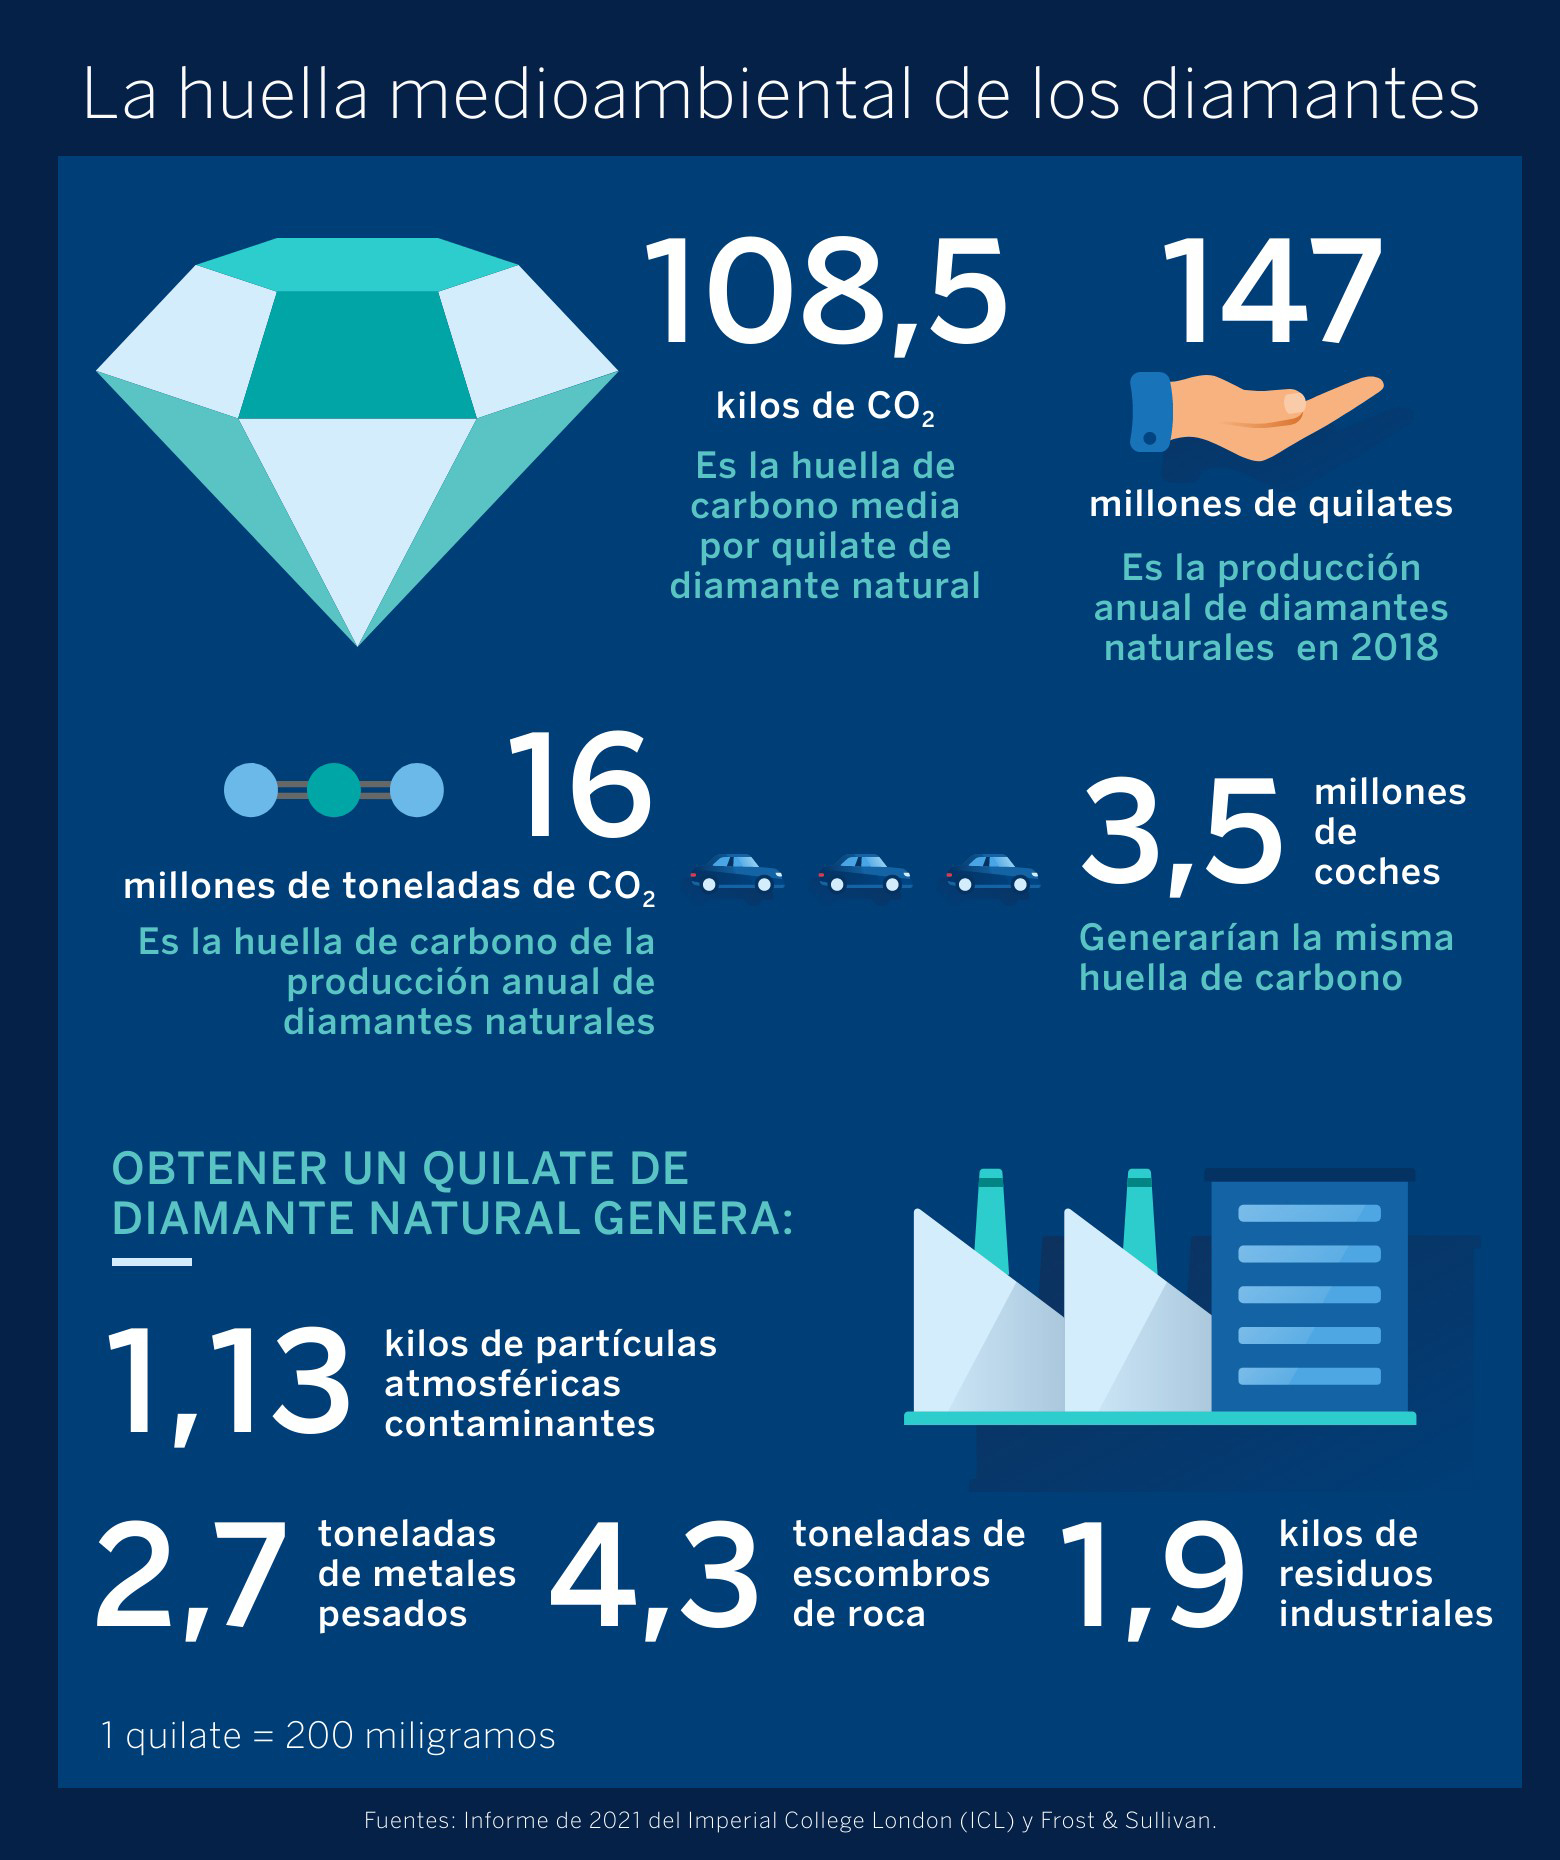 BBVA-OpenMind-cual es la huella medioambiental de los diamantes